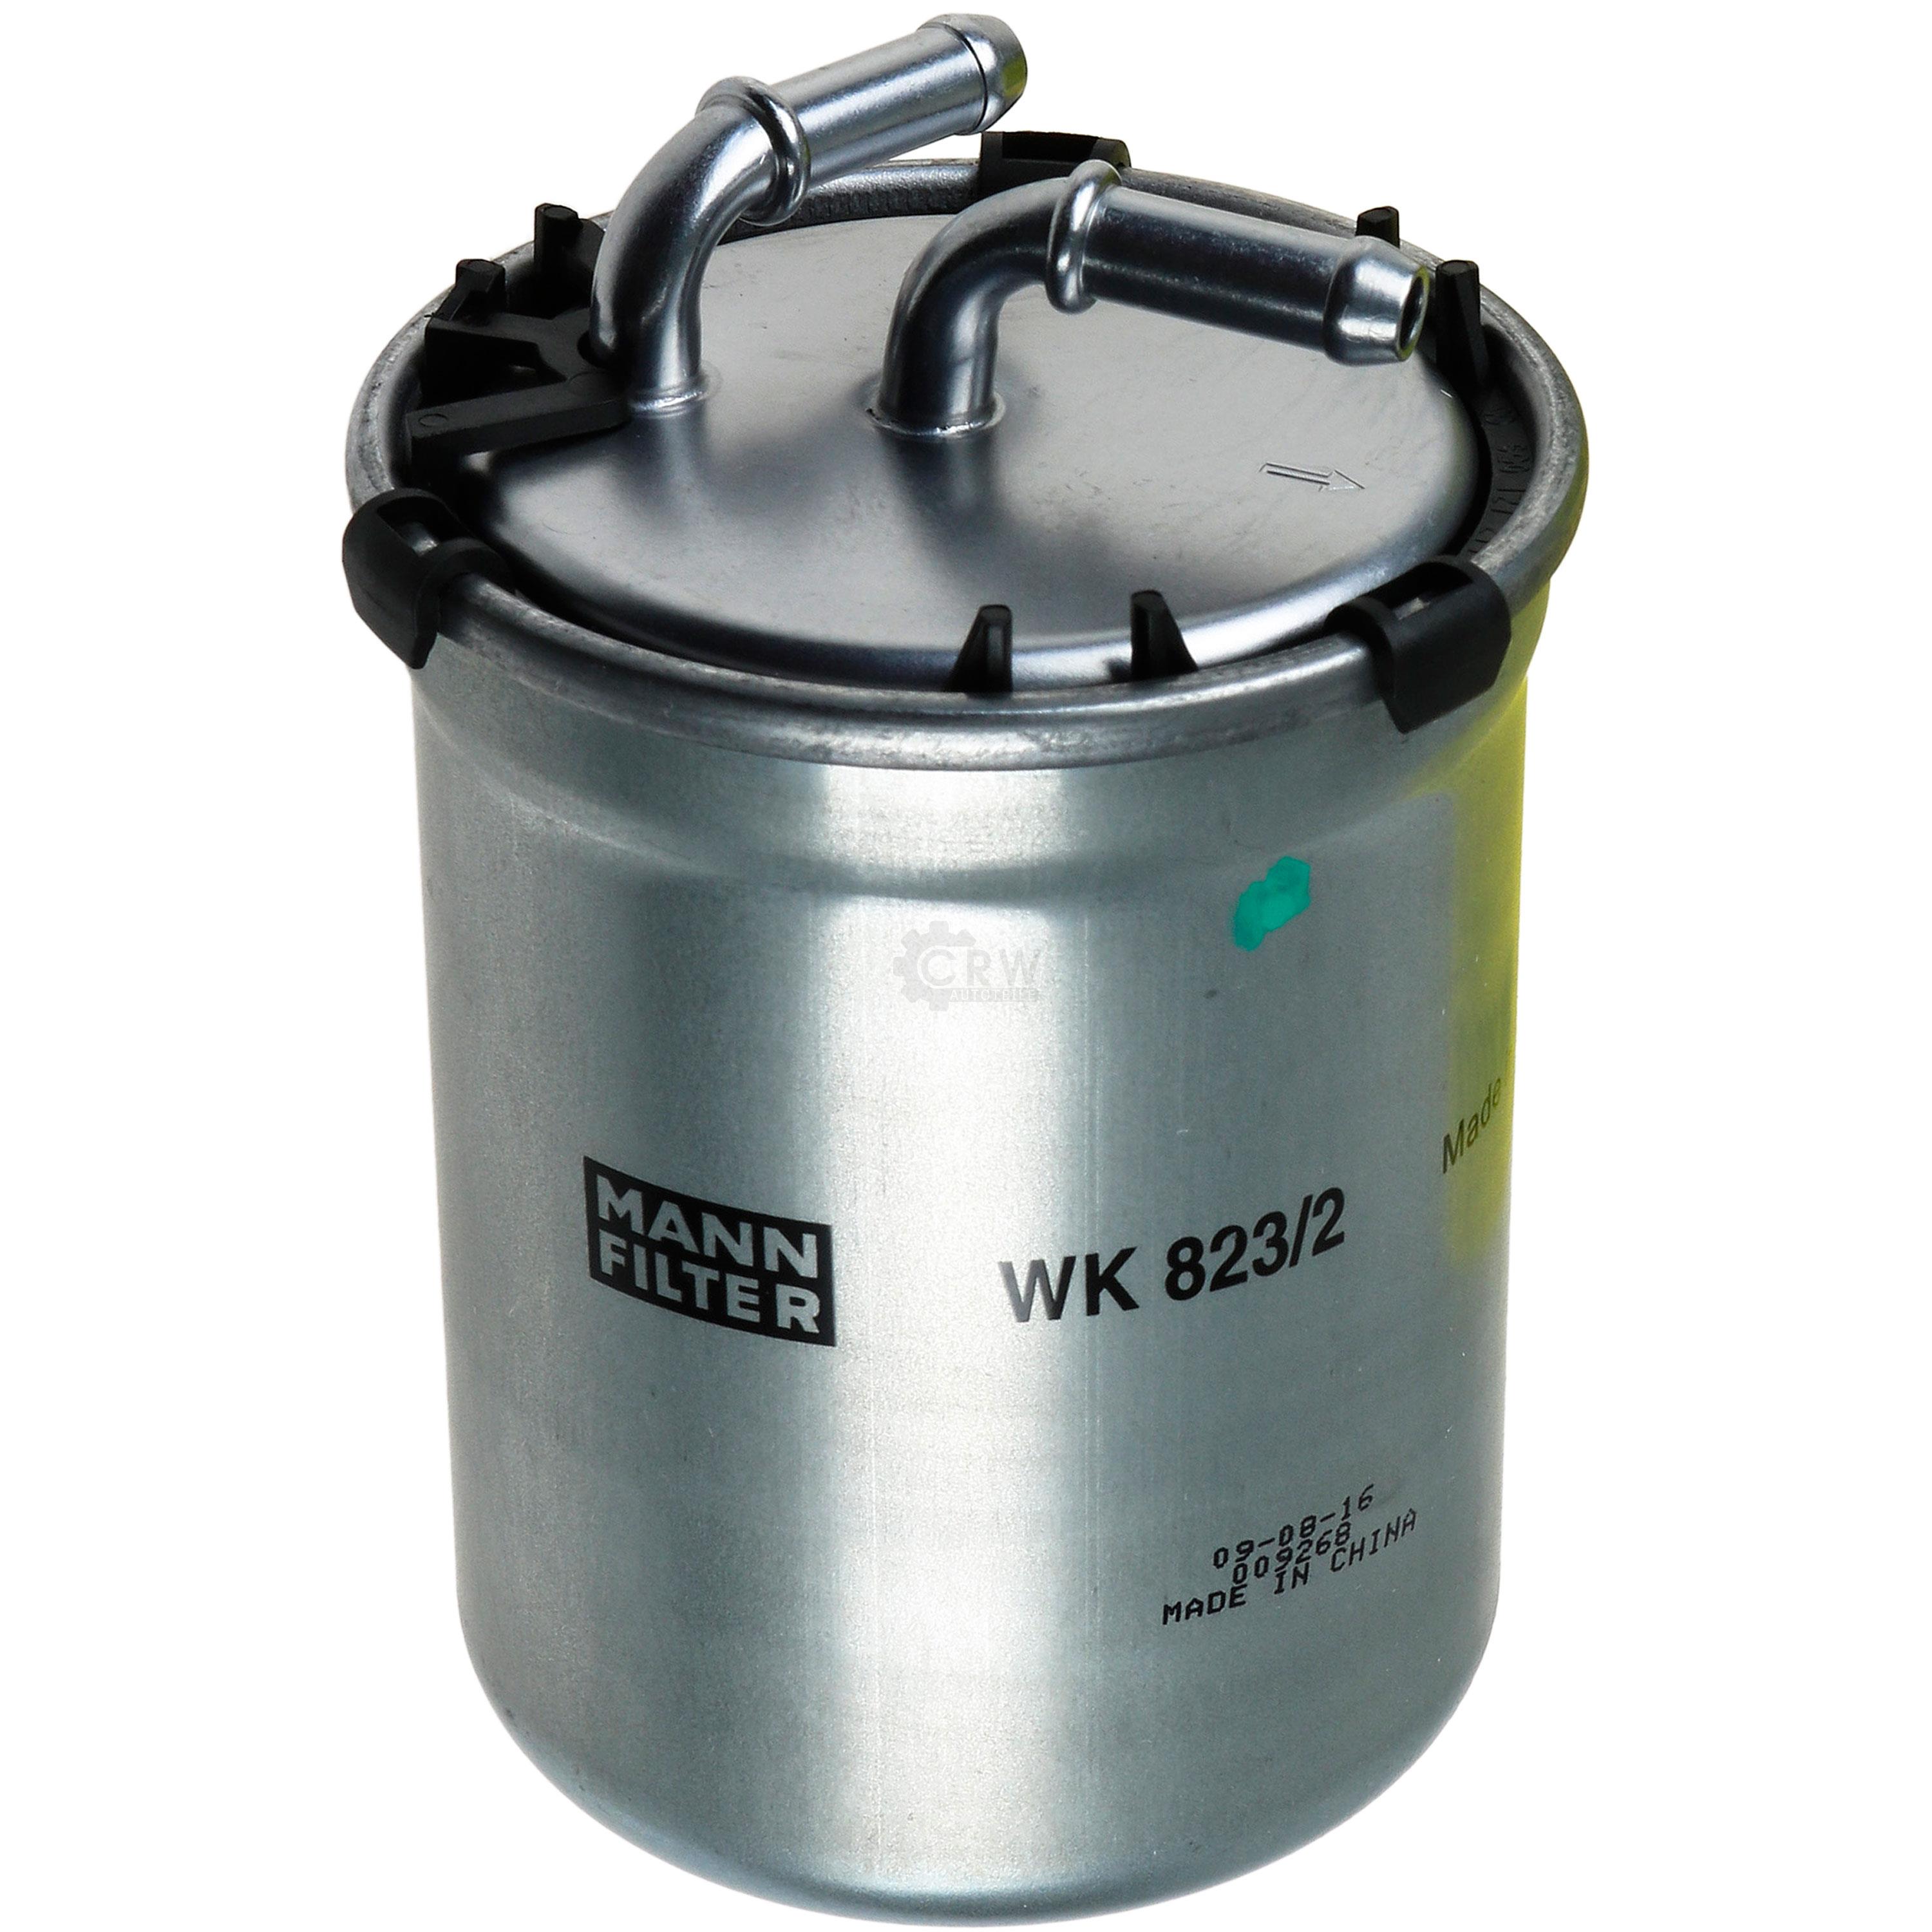 MANN-FILTER Kraftstofffilter WK 823/2 Fuel Filter